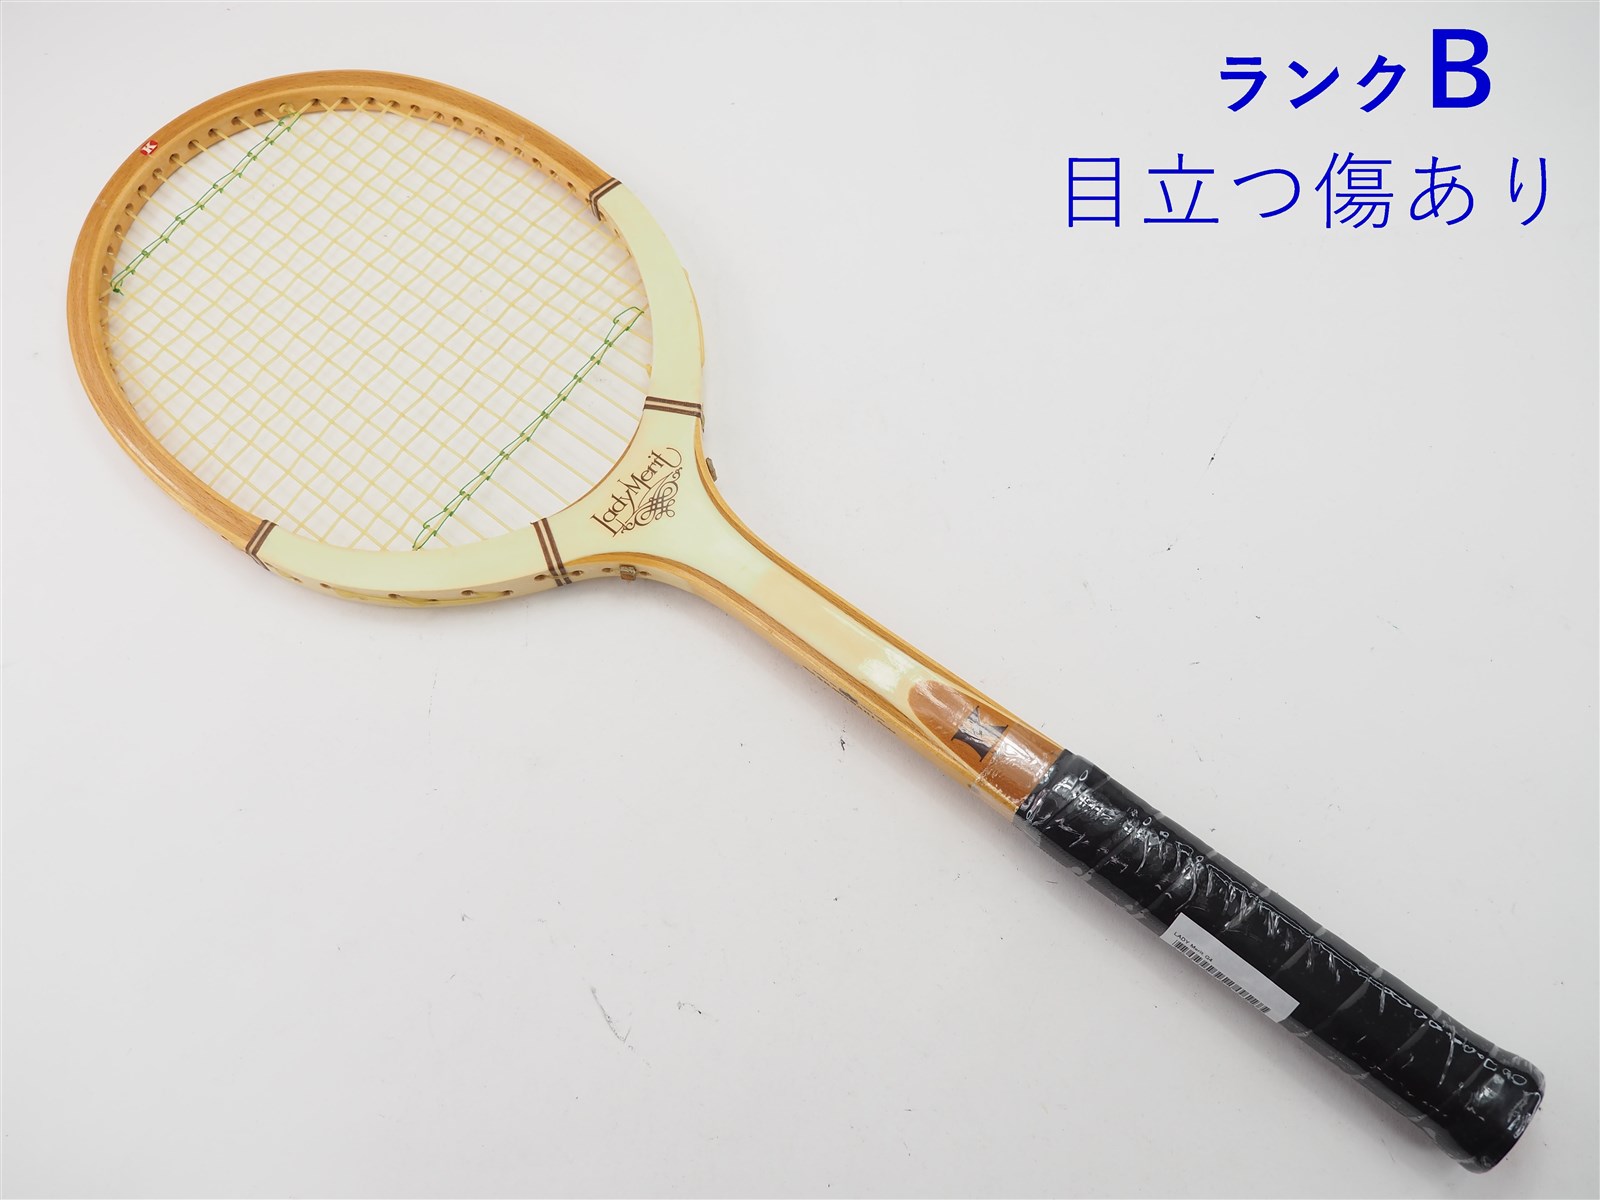 【中古】カワサキ レディー メリットKAWASAKI LADY Merit(G4相当)【中古 テニスラケット】の通販・販売| カワサキ